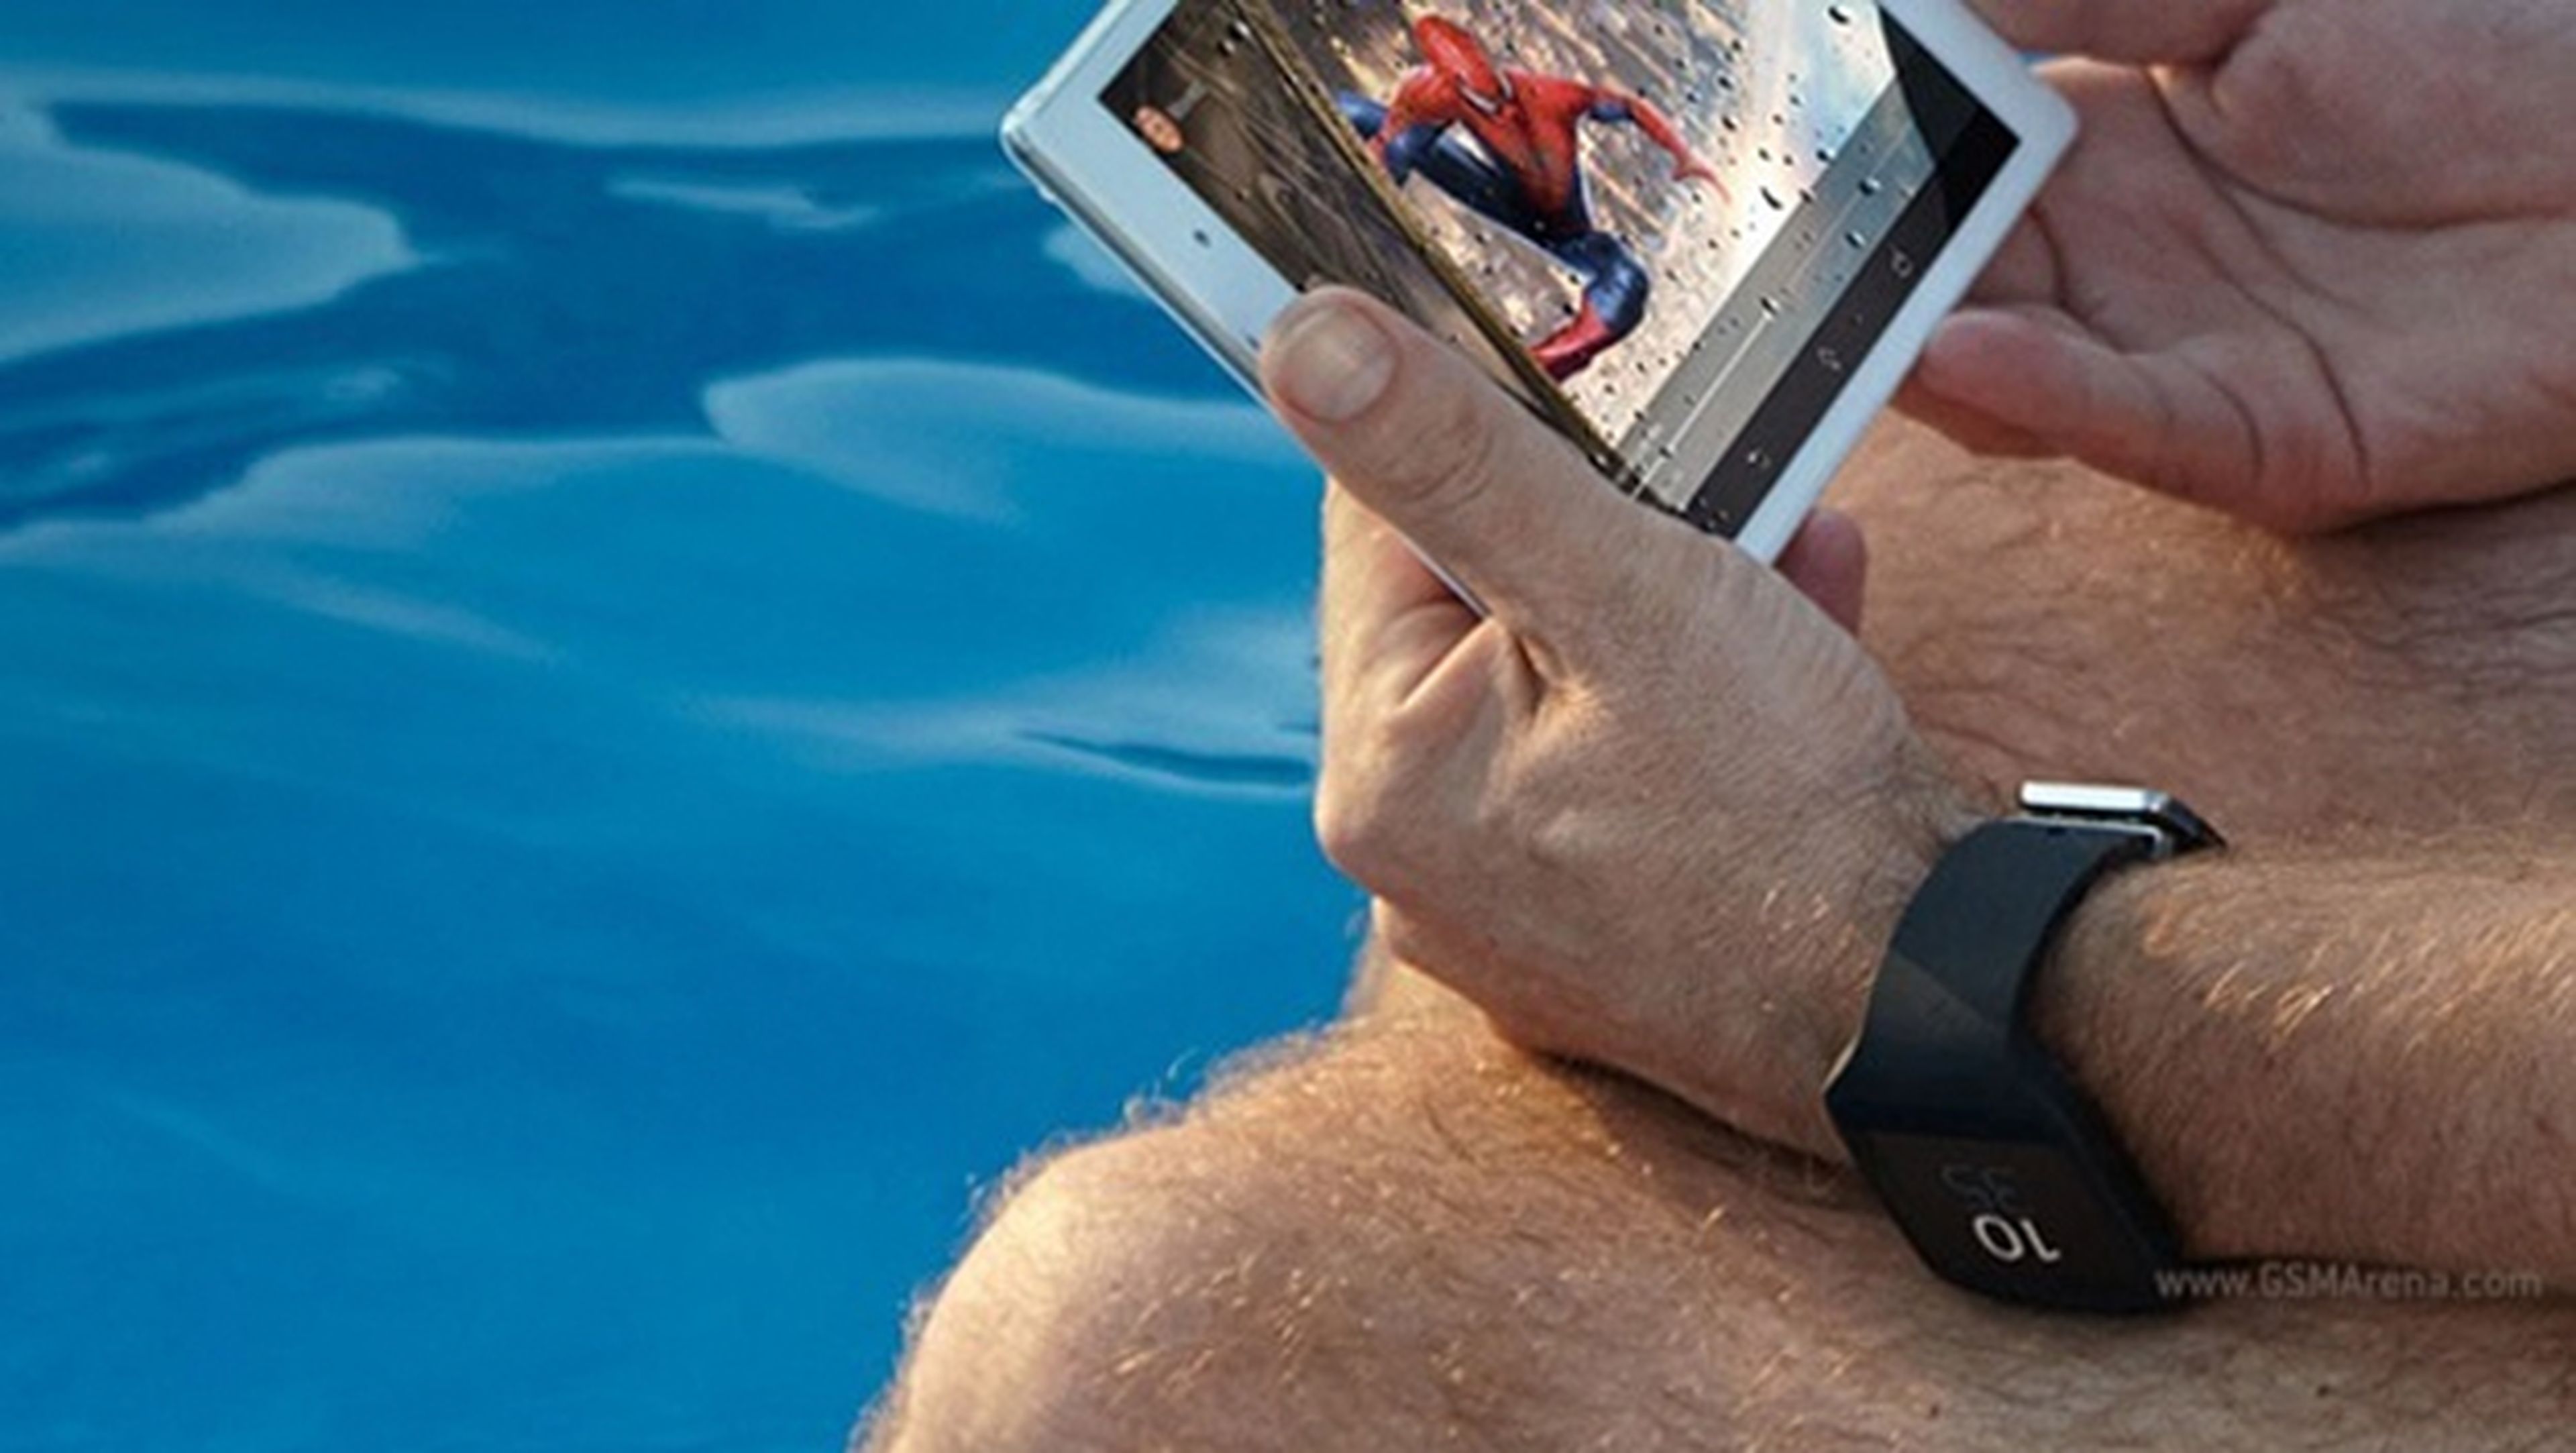 Sony Xperia Tablet Z3 Compact y Sony Smartwatch, filtrados